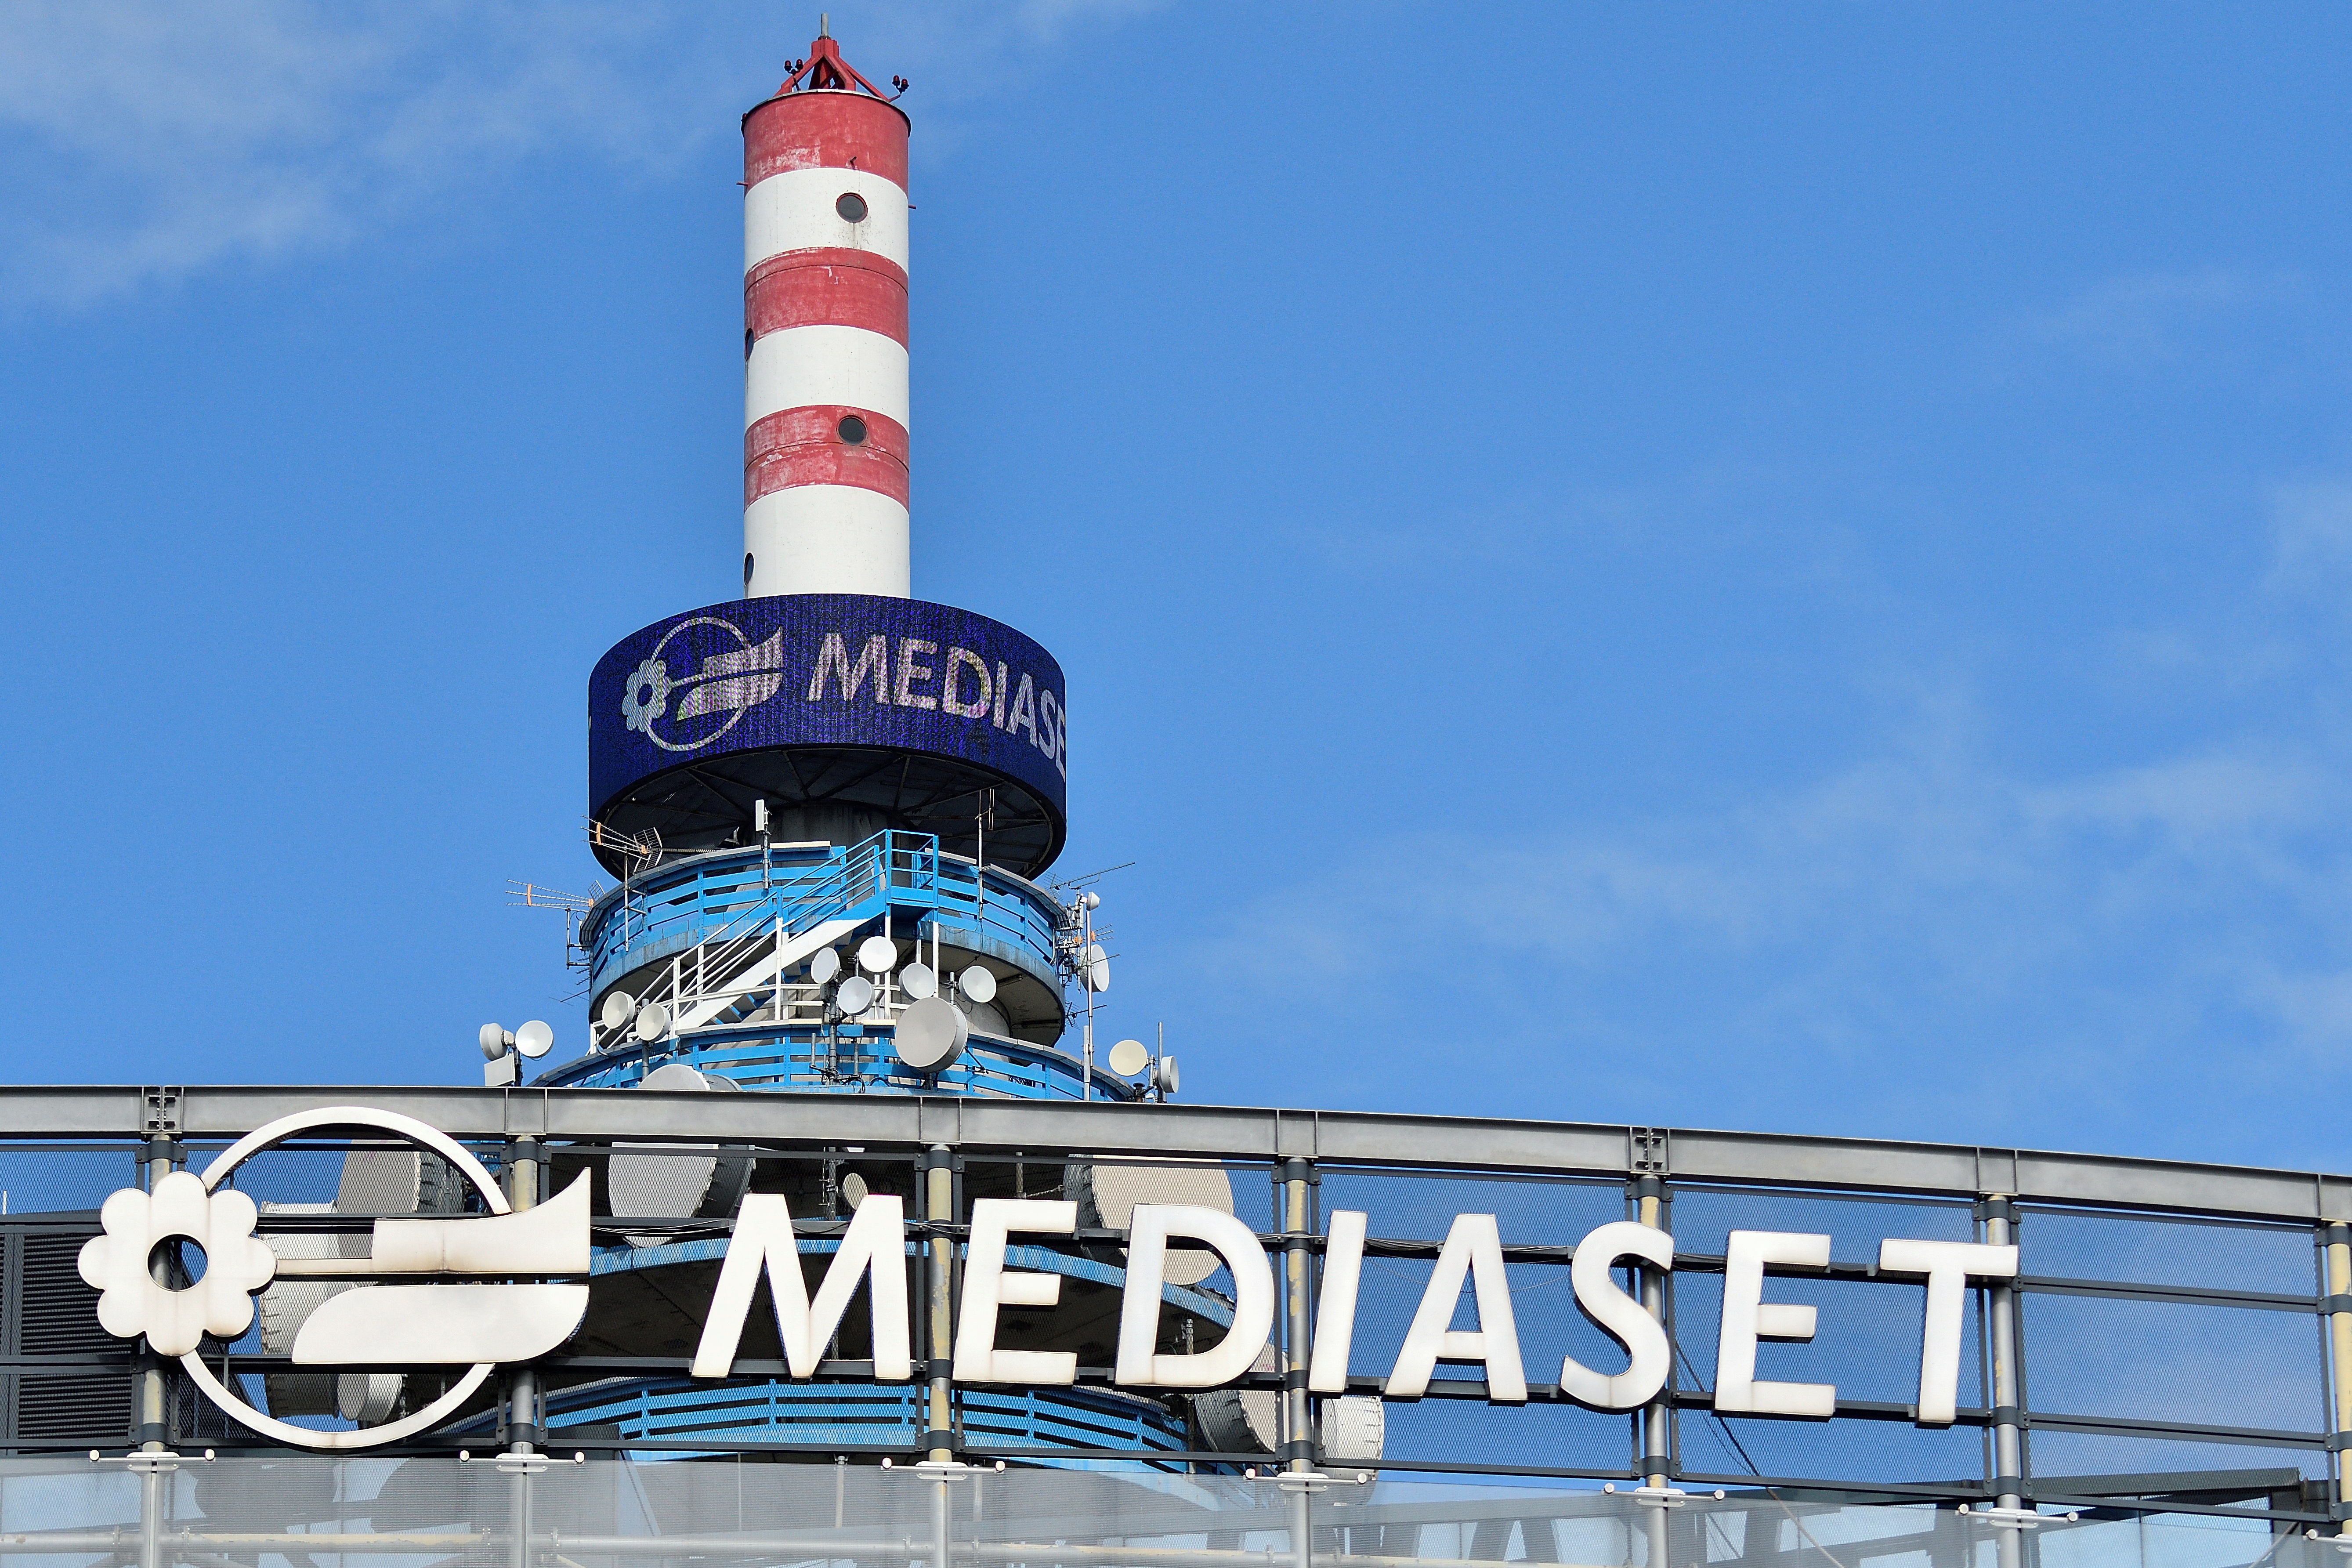 La torre de Mediaset en el cuartel general de Cologno Monzese (REUTERS/Flavio Lo Scalzo)